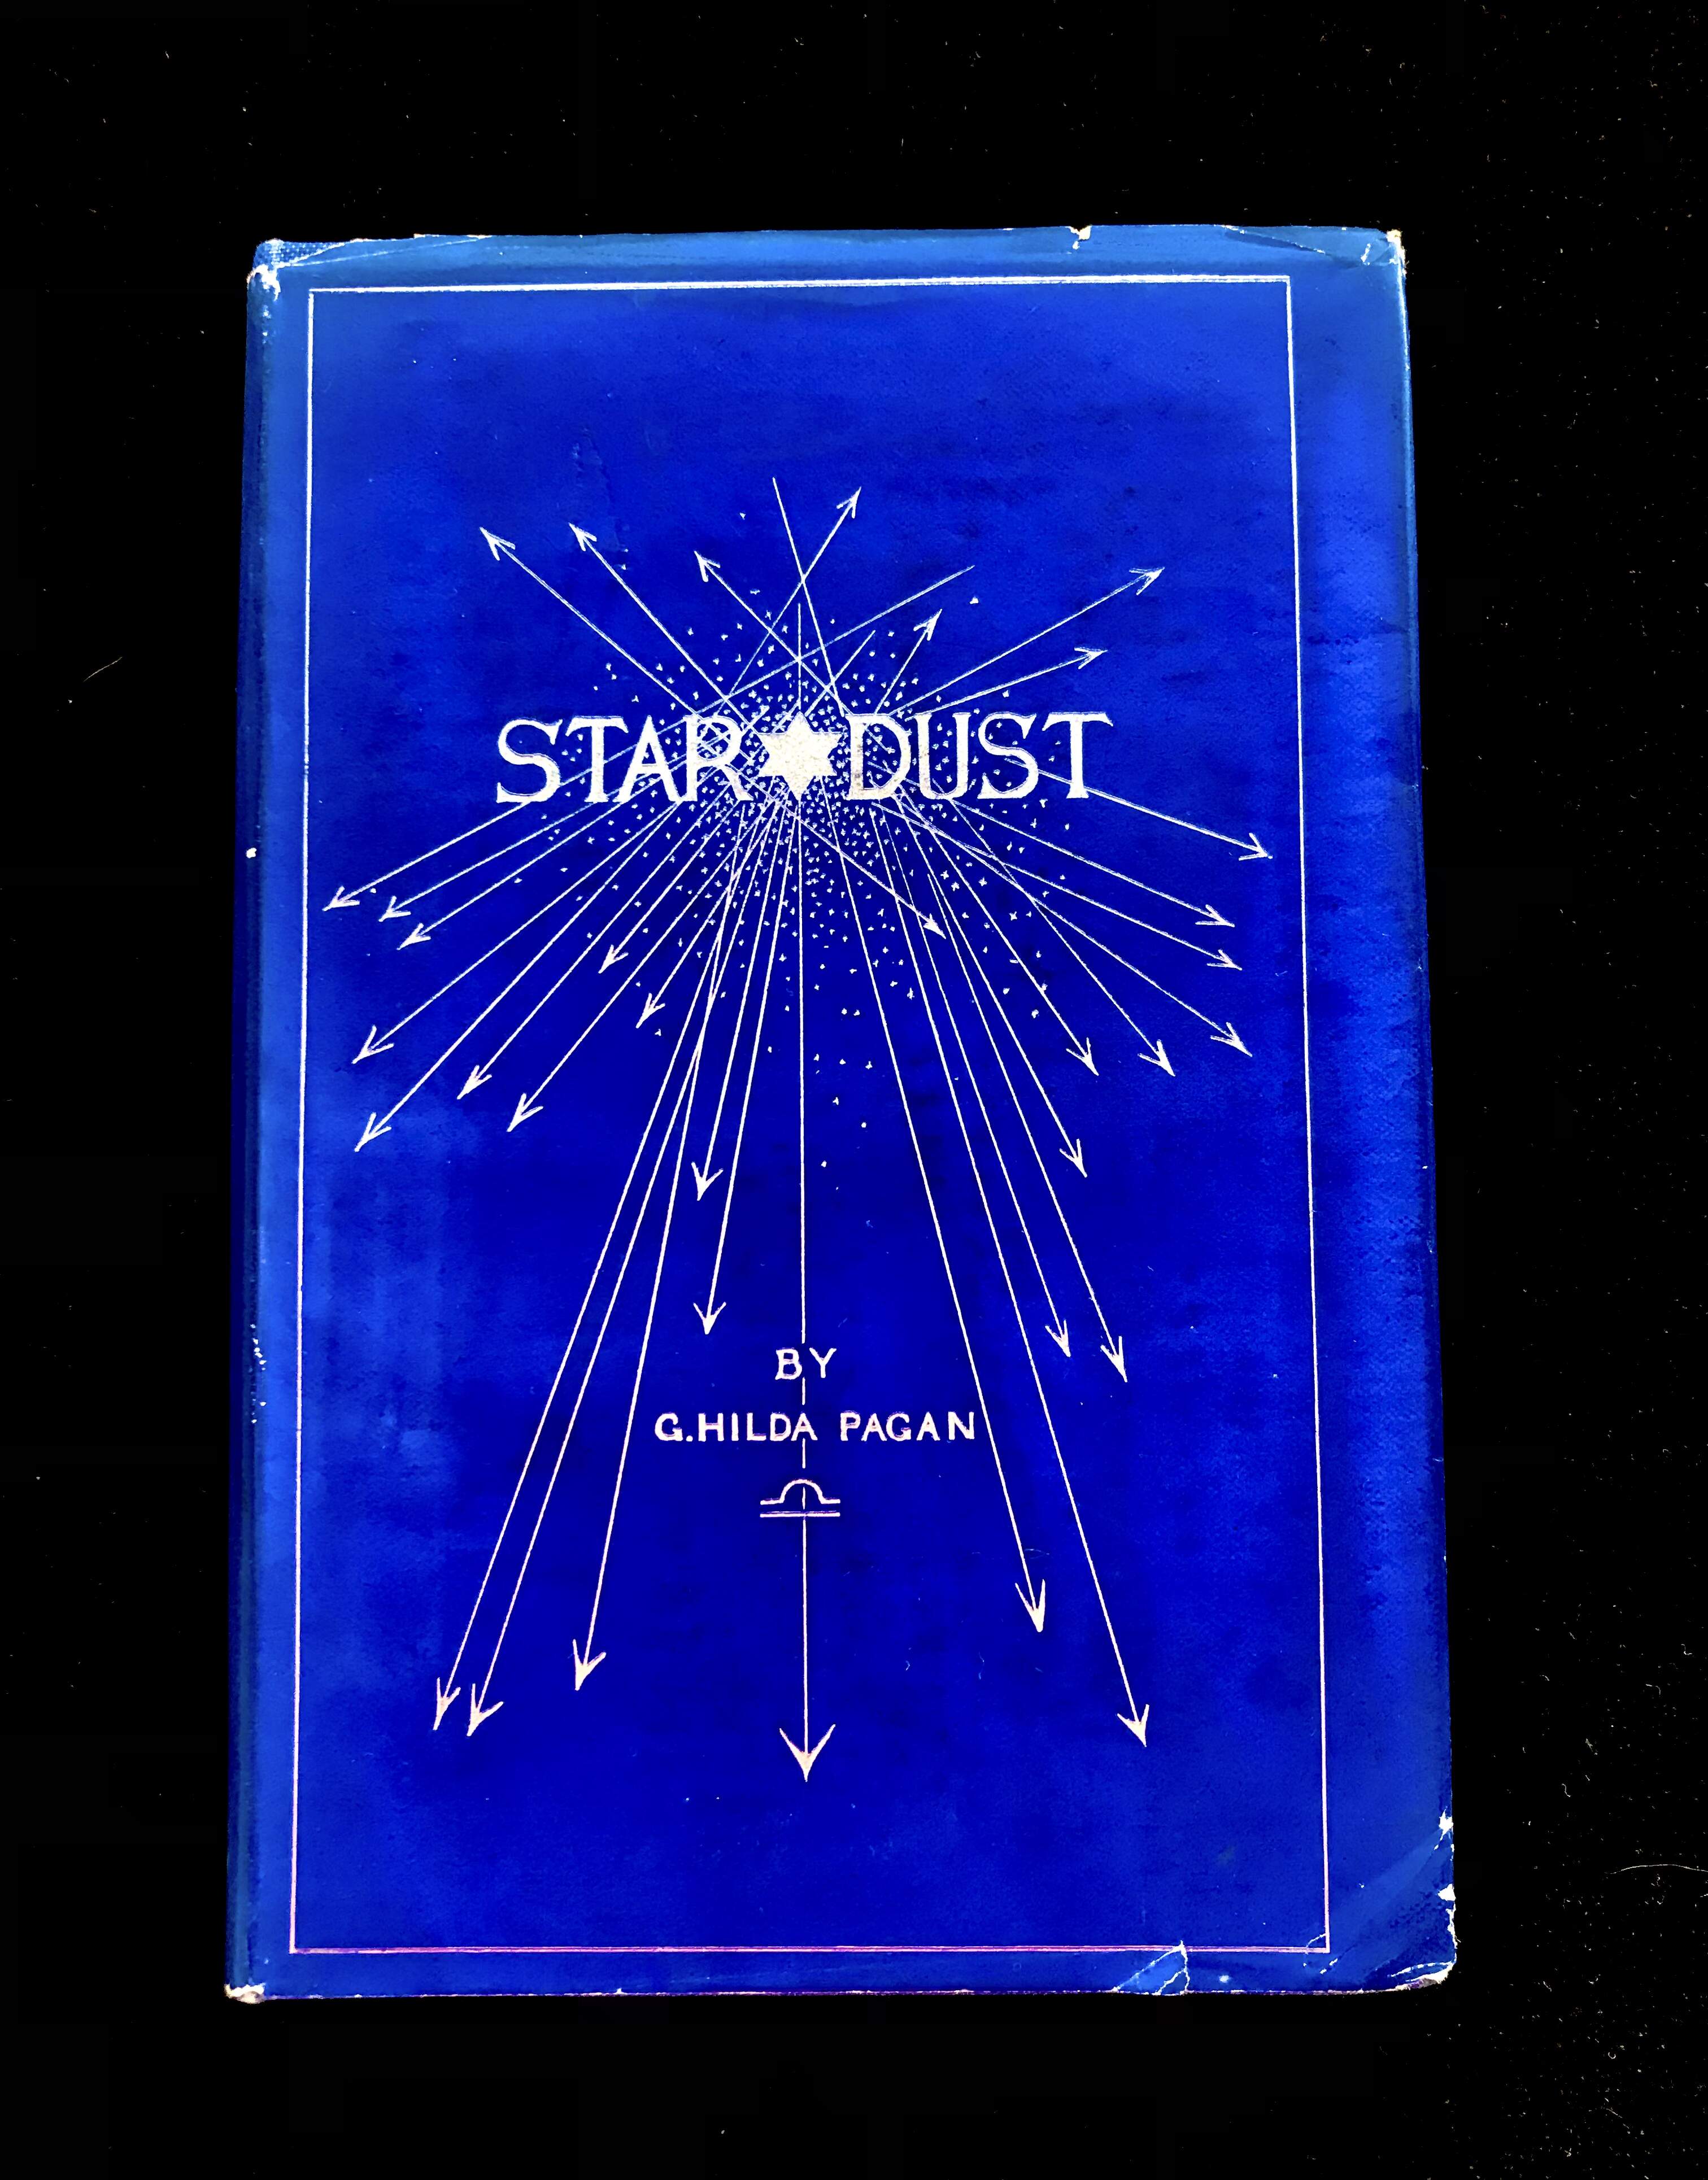 Star Dust by C. Hilda Pagan